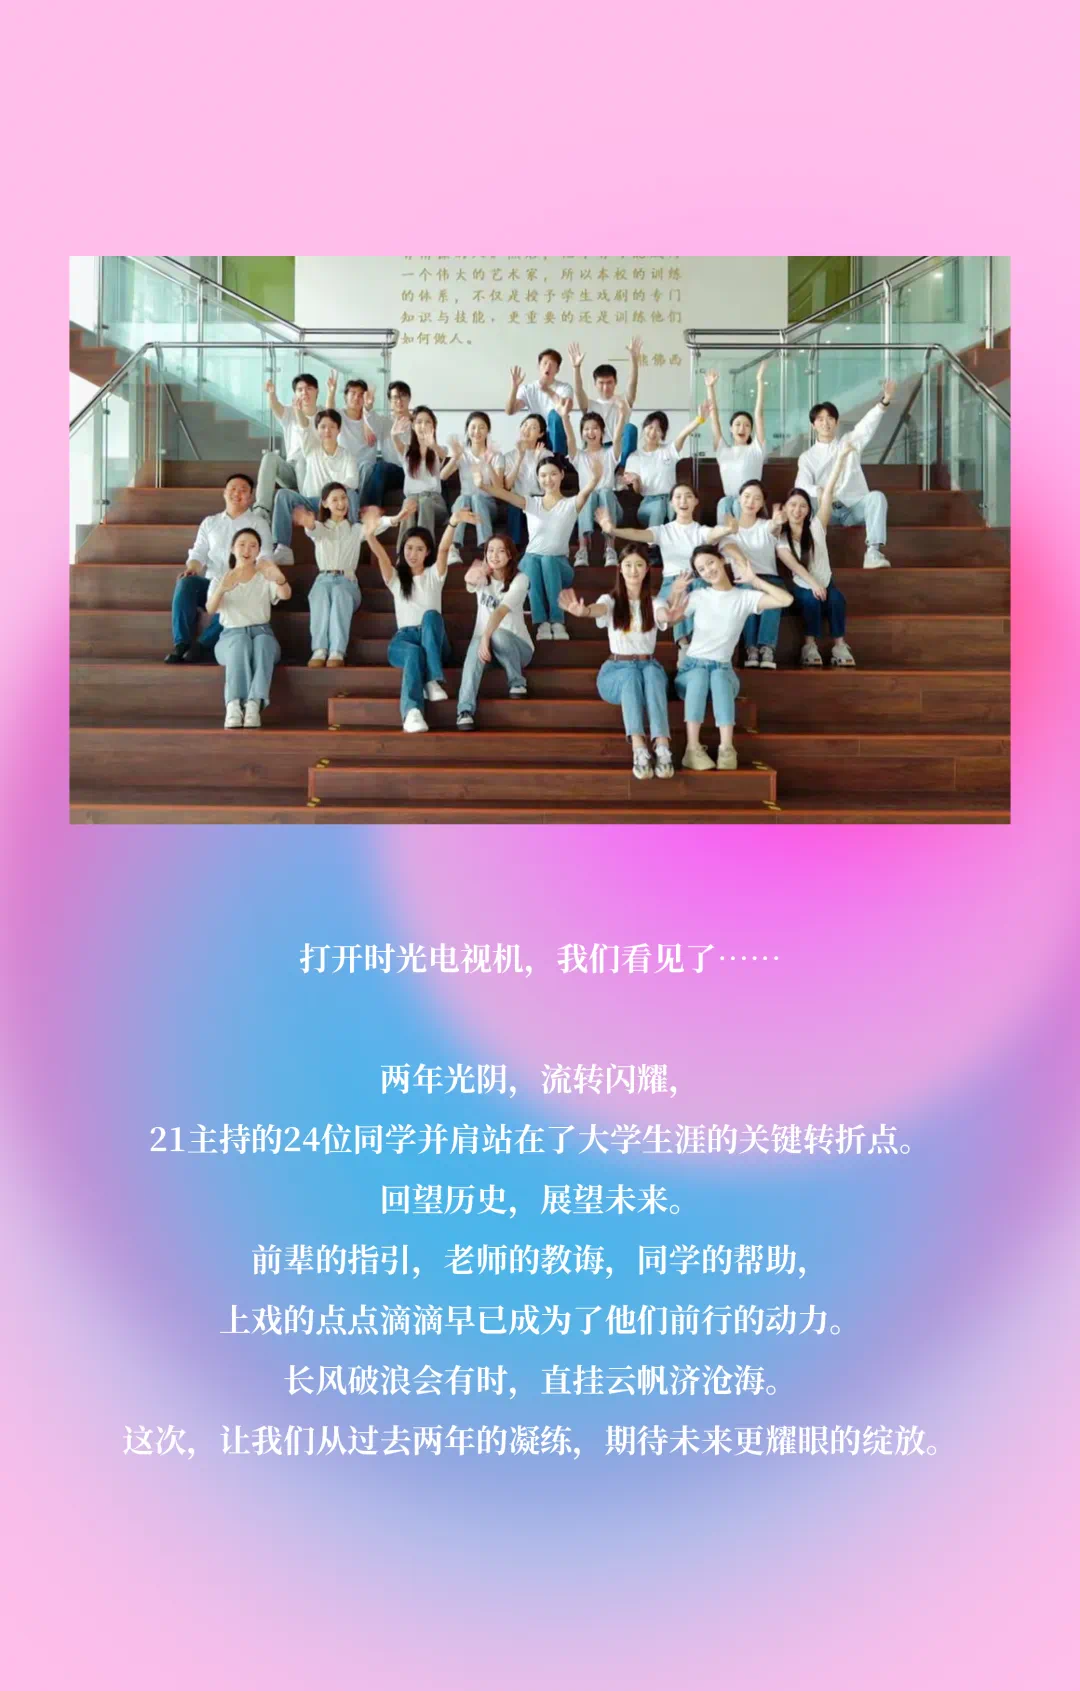 上海戏剧学院2020级音乐剧表演专业新生合影 @上戏20音乐剧